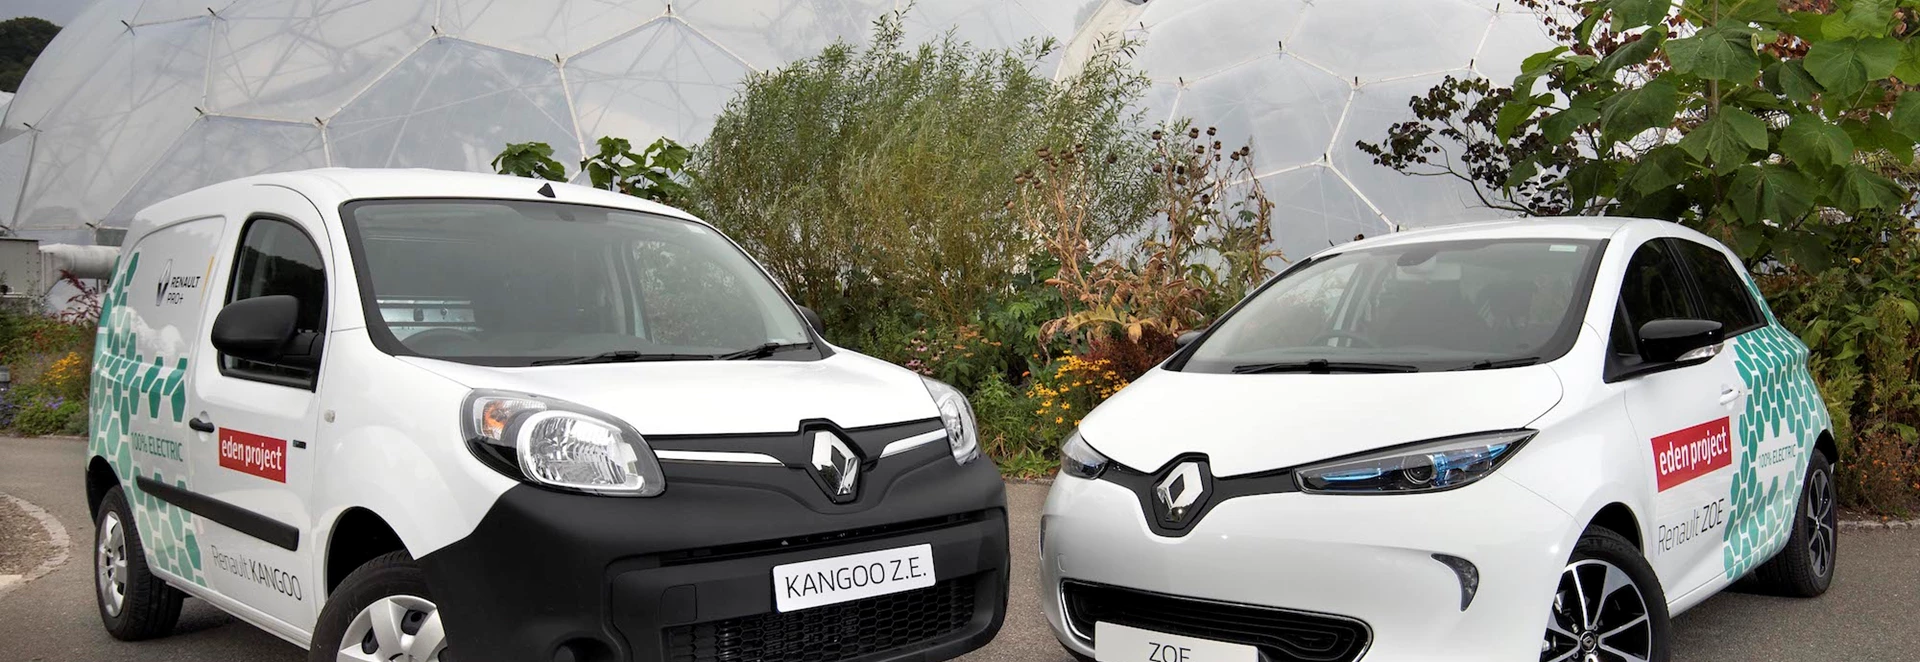 Renault supplies Eden Project with fleet of EVs